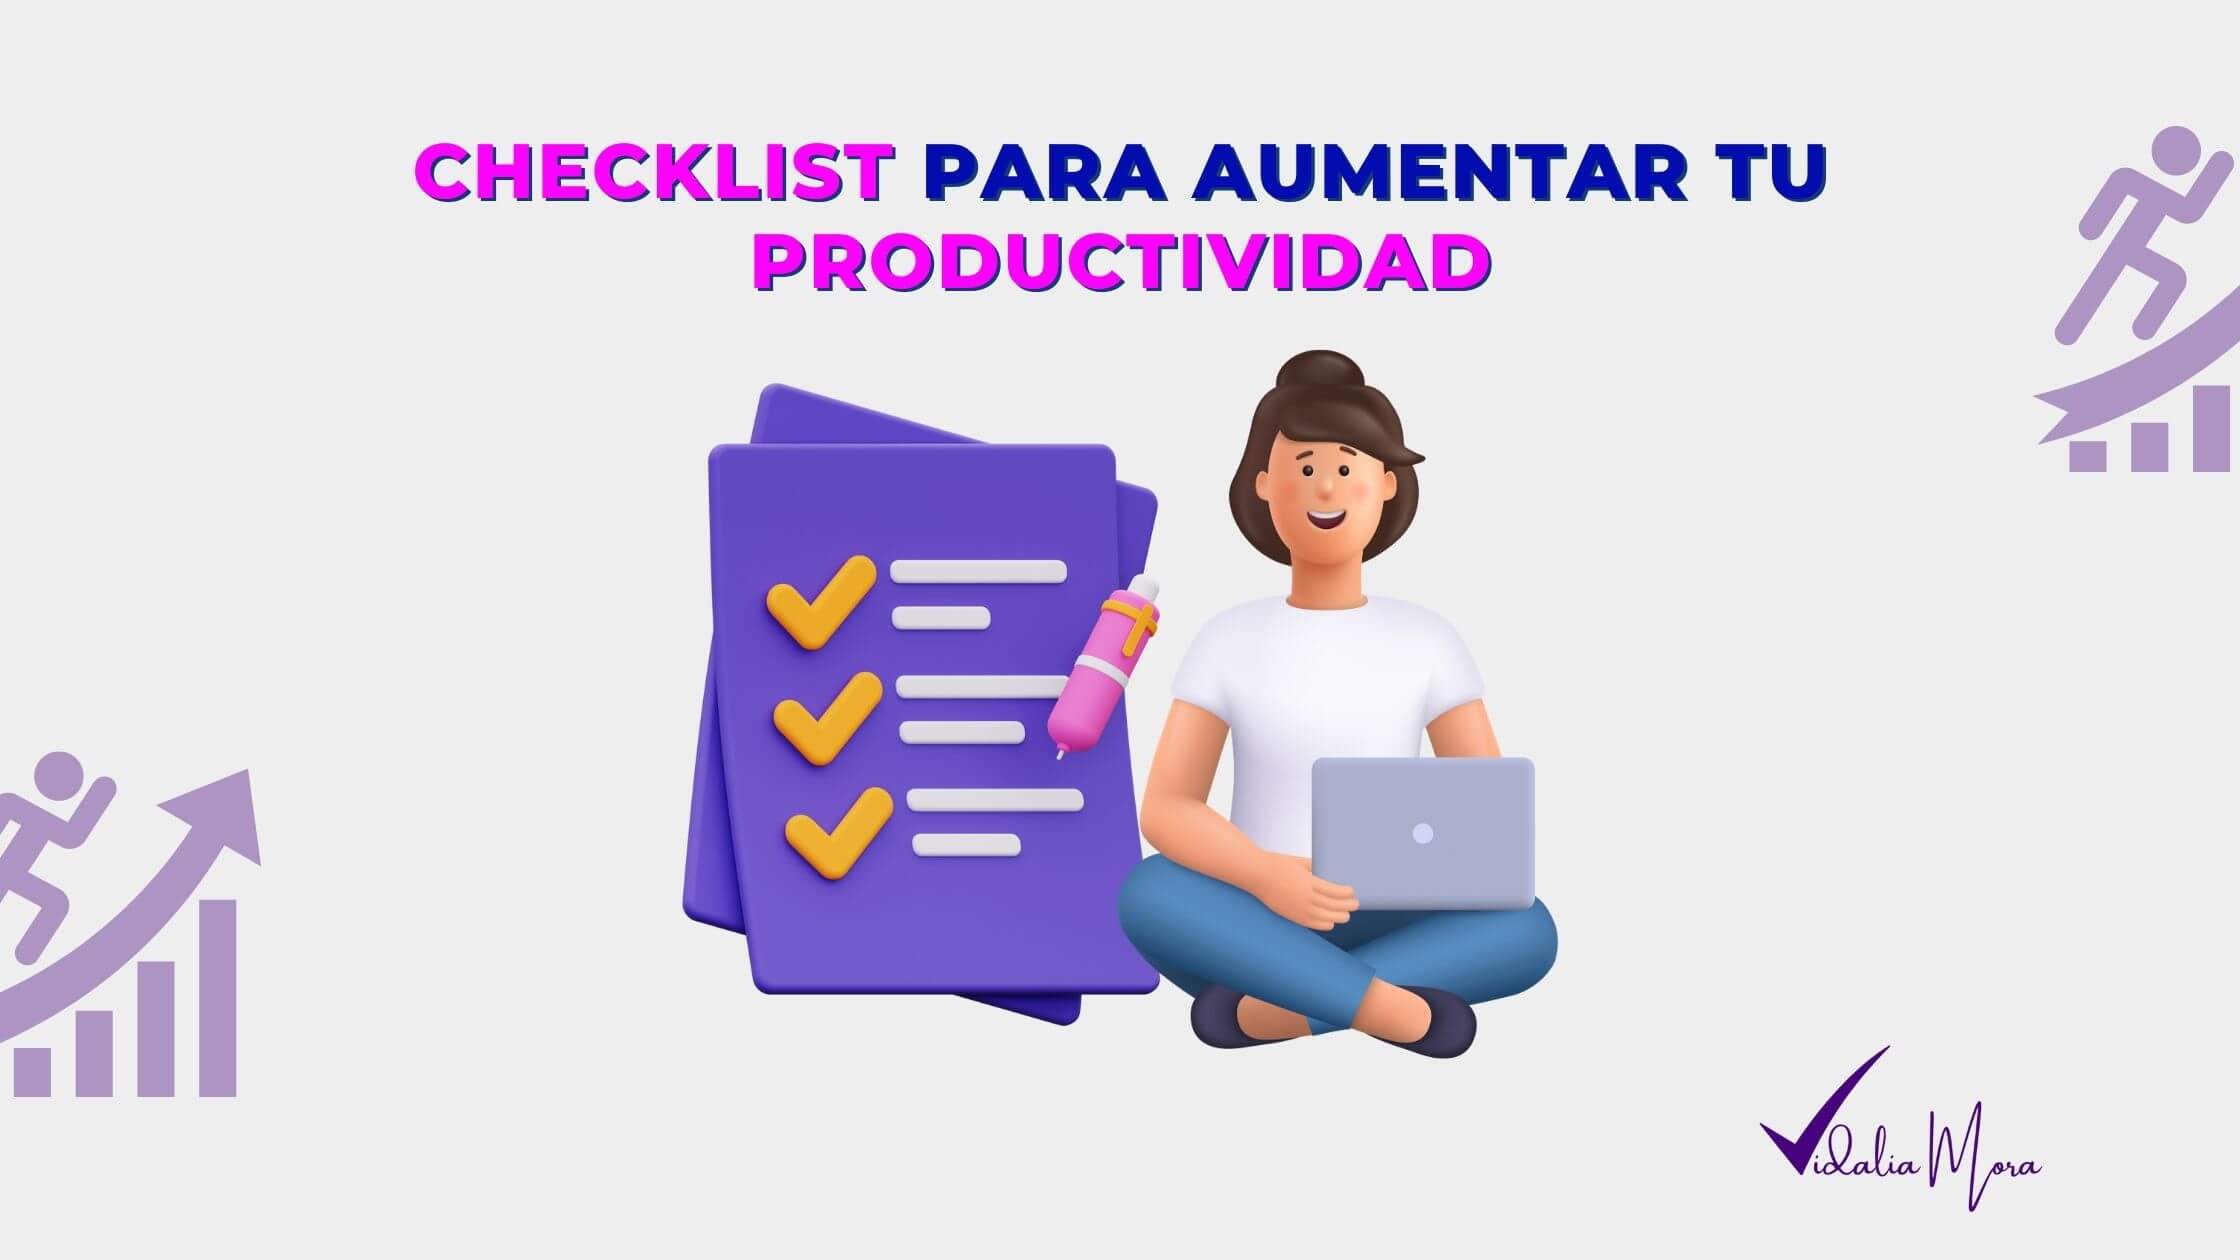 Checklist de productividad Vidalia Mora PMD